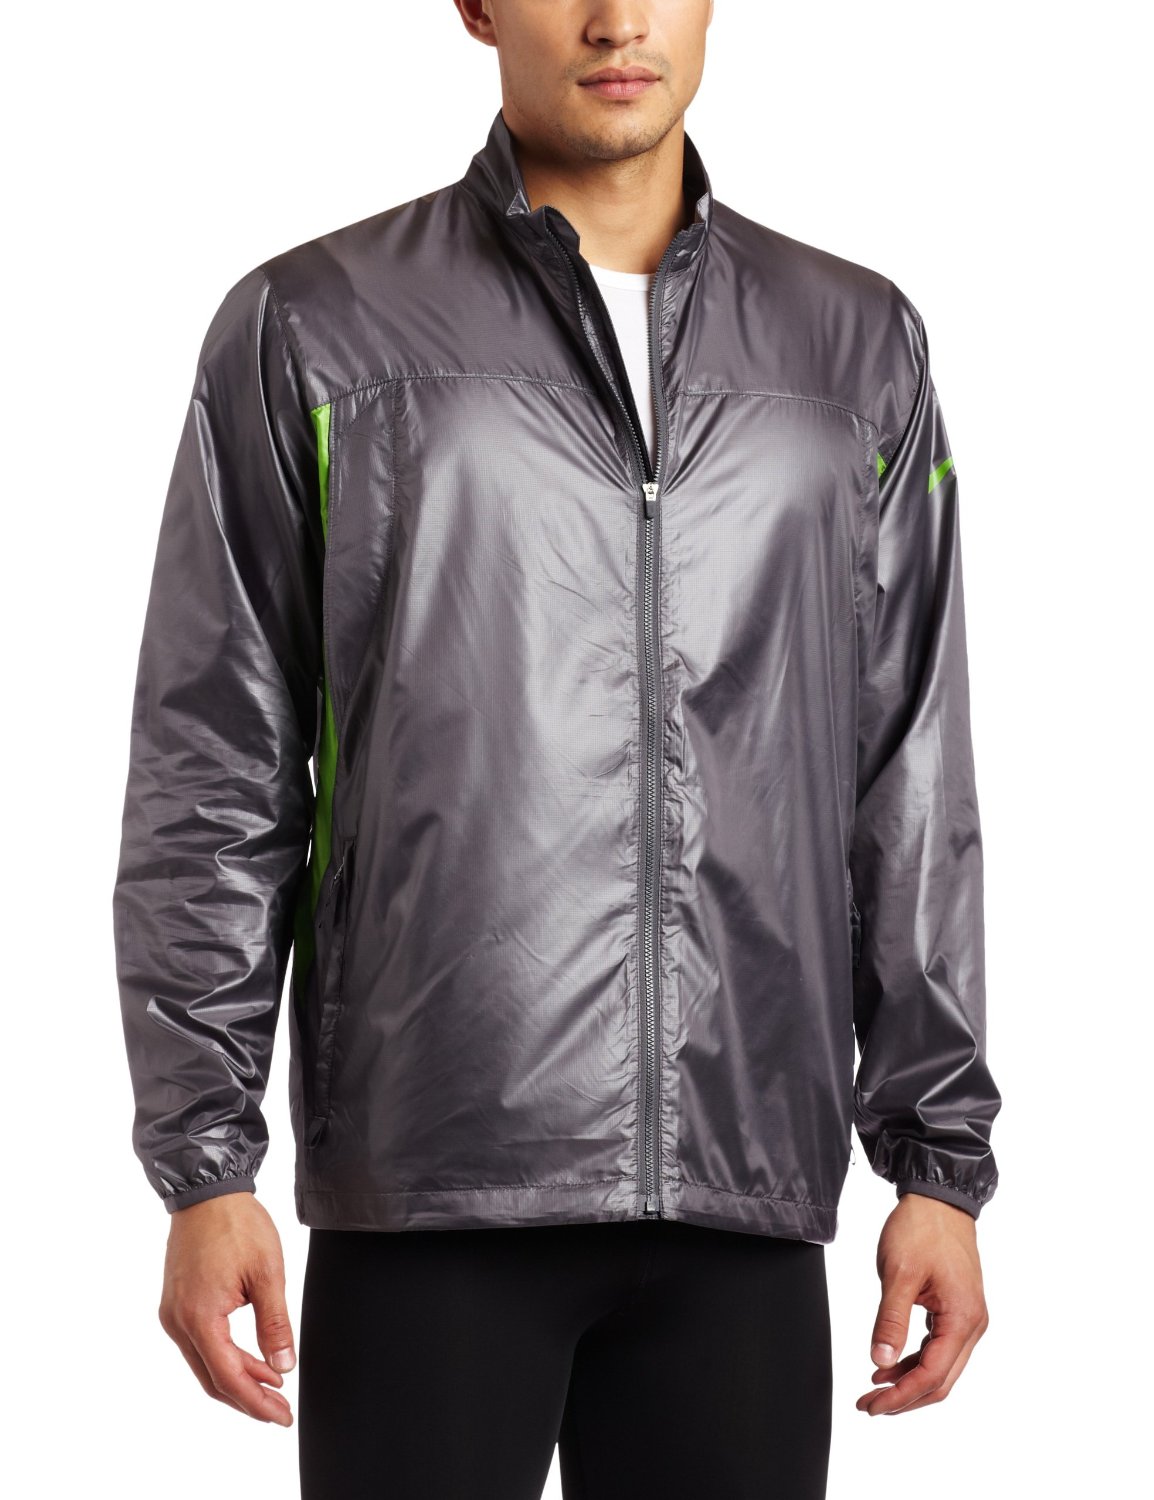 Nike Golf Men's New Light Weight Jacket  $26.10